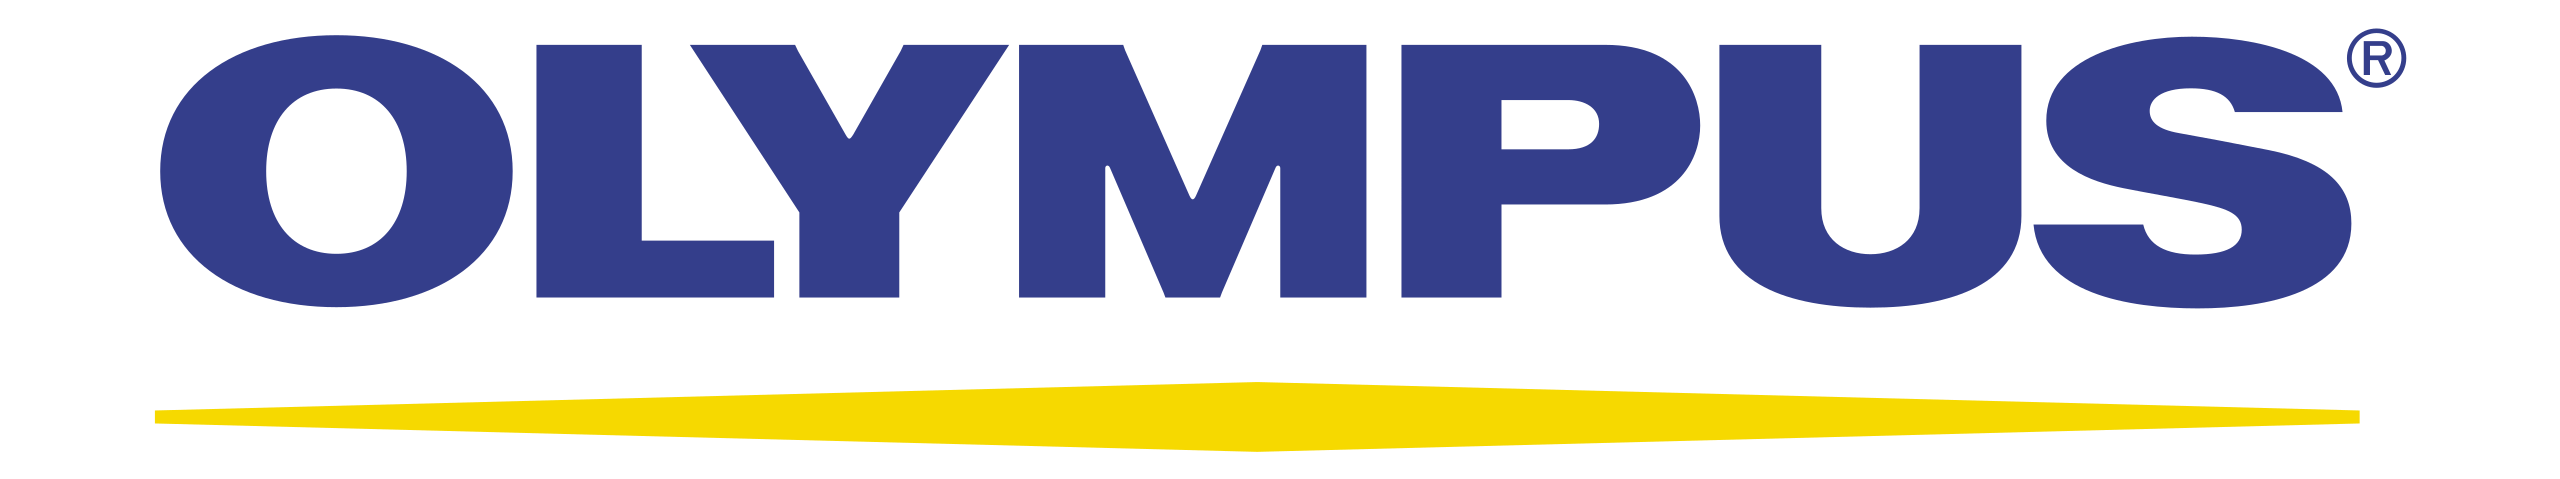 1Olympus logo